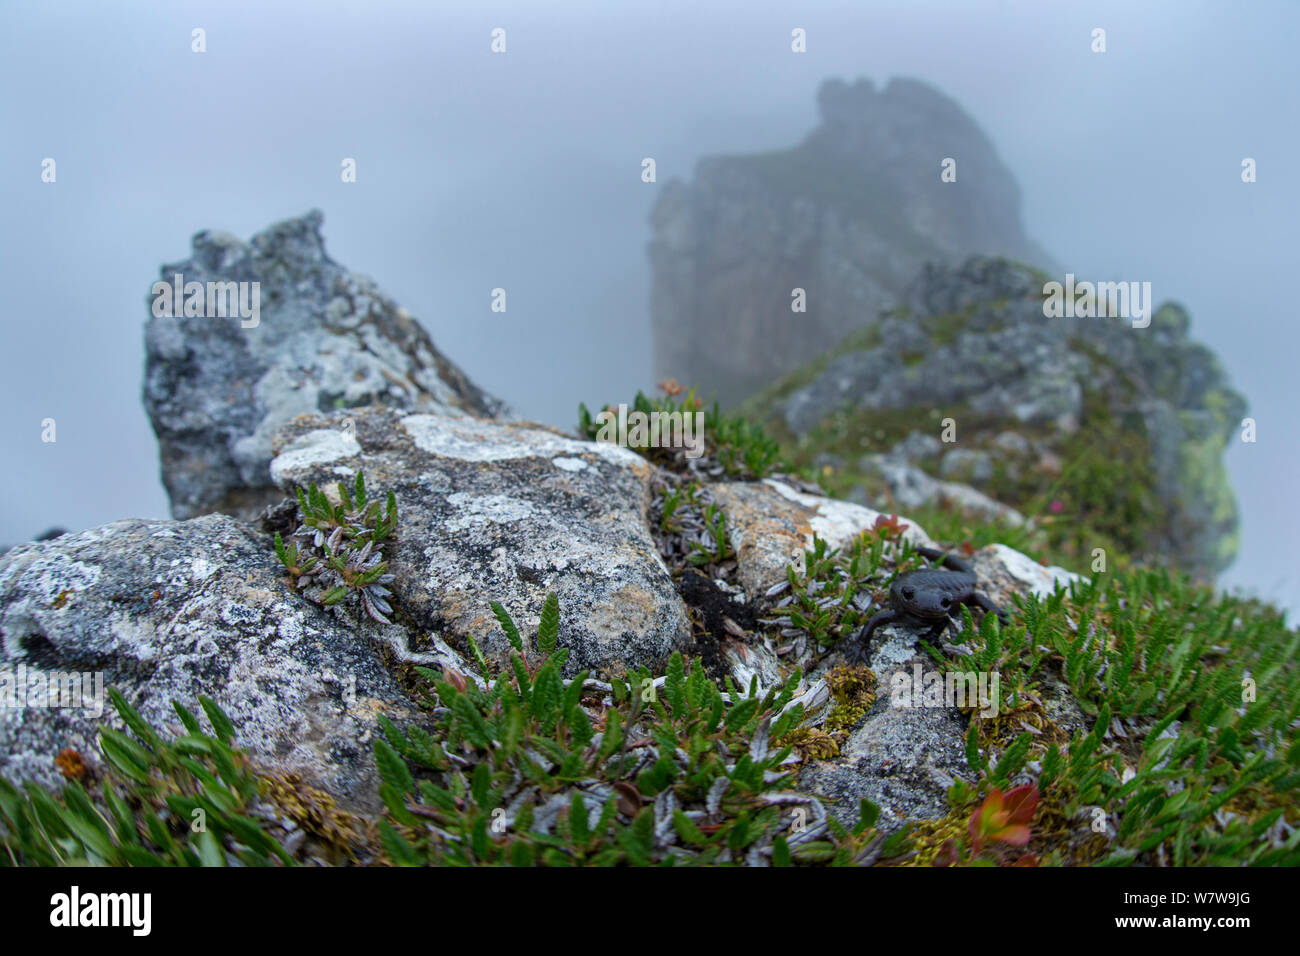 Salamandre alpestre (Salamandra atra) dans l'habitat misty, Alpes Bernoises, Suisse, juillet. Banque D'Images